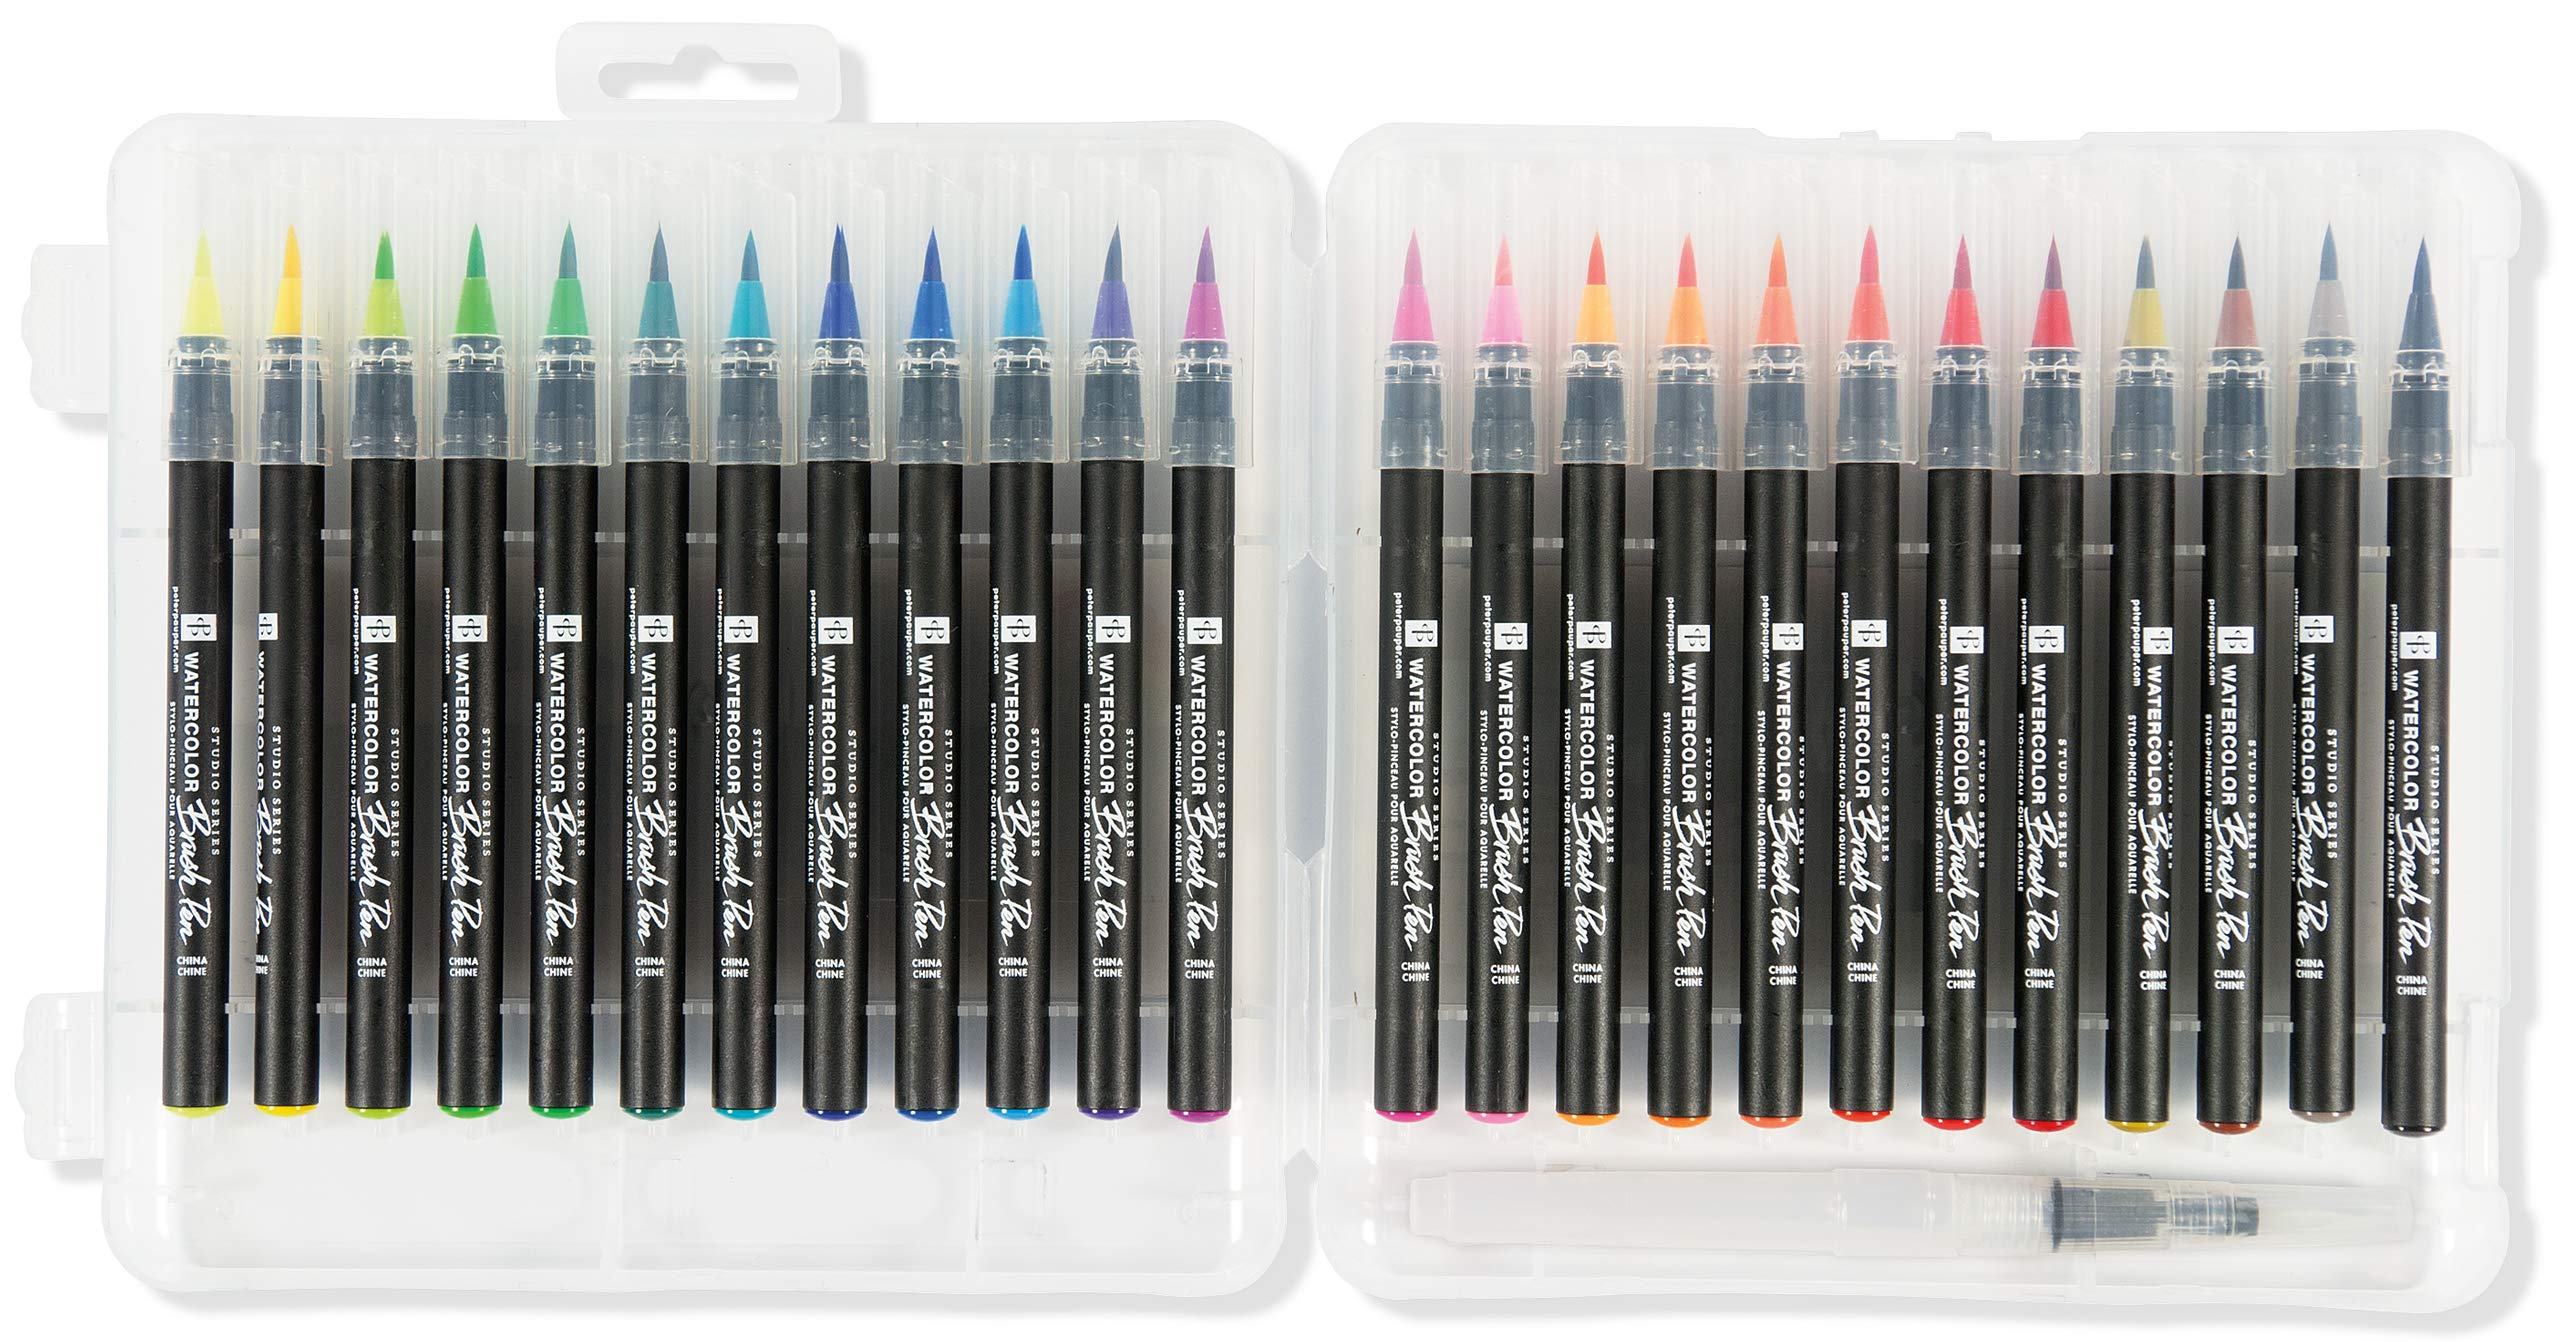 Studio Series Watercolor Brush Marker Pens (Set of 24 pens, plus bonus water brush), Great for Hand Lettering, Calligraphy, Manga, Comics, Adult Coloring Books, Journals, and all DIY Drawing Art